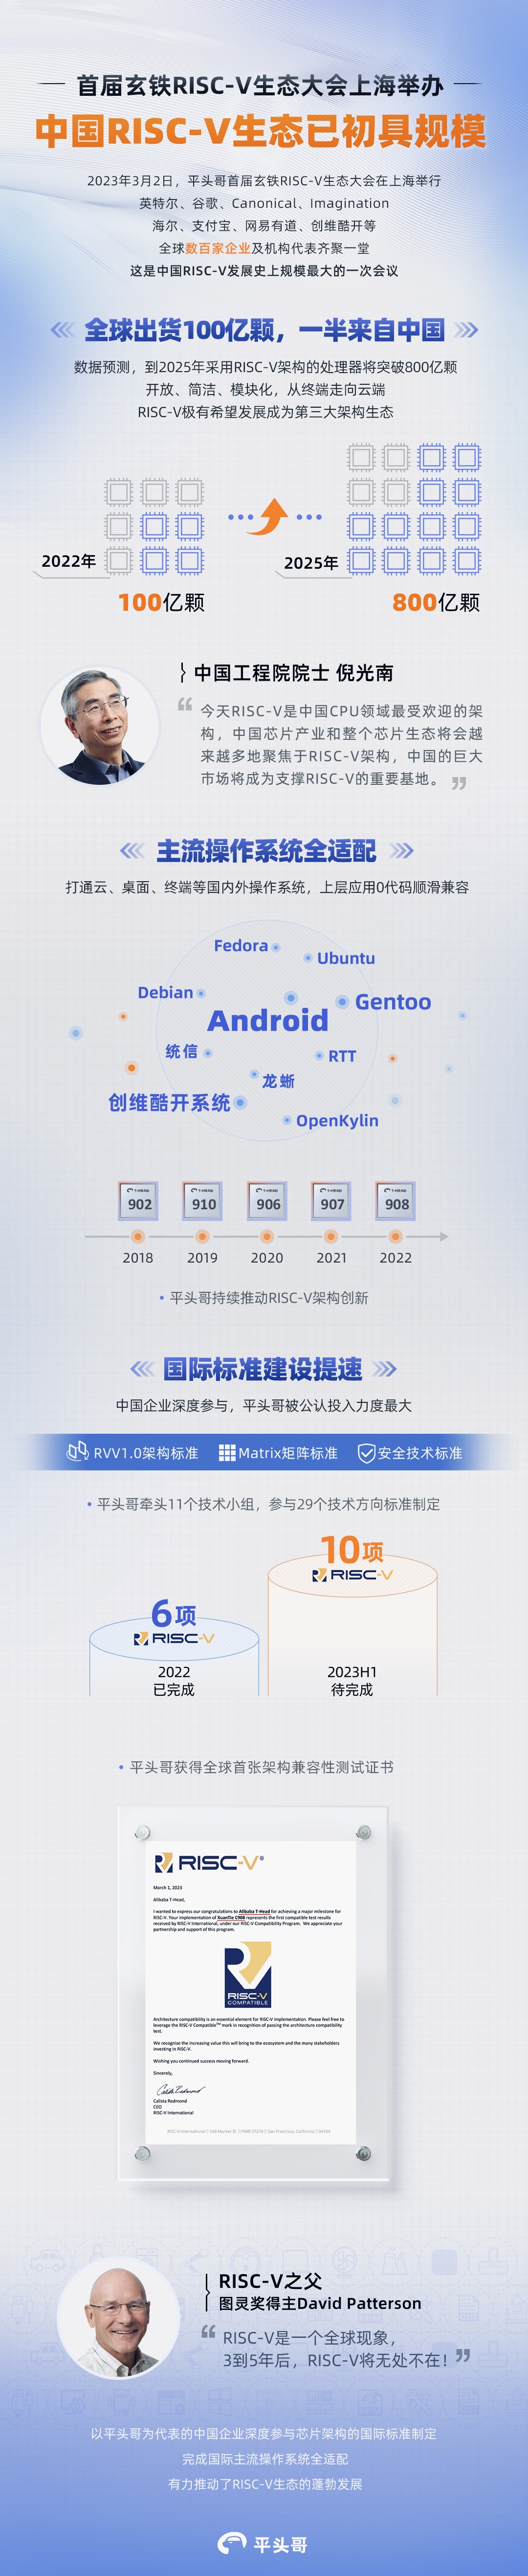 中国RISC-V生态已初具规模.png